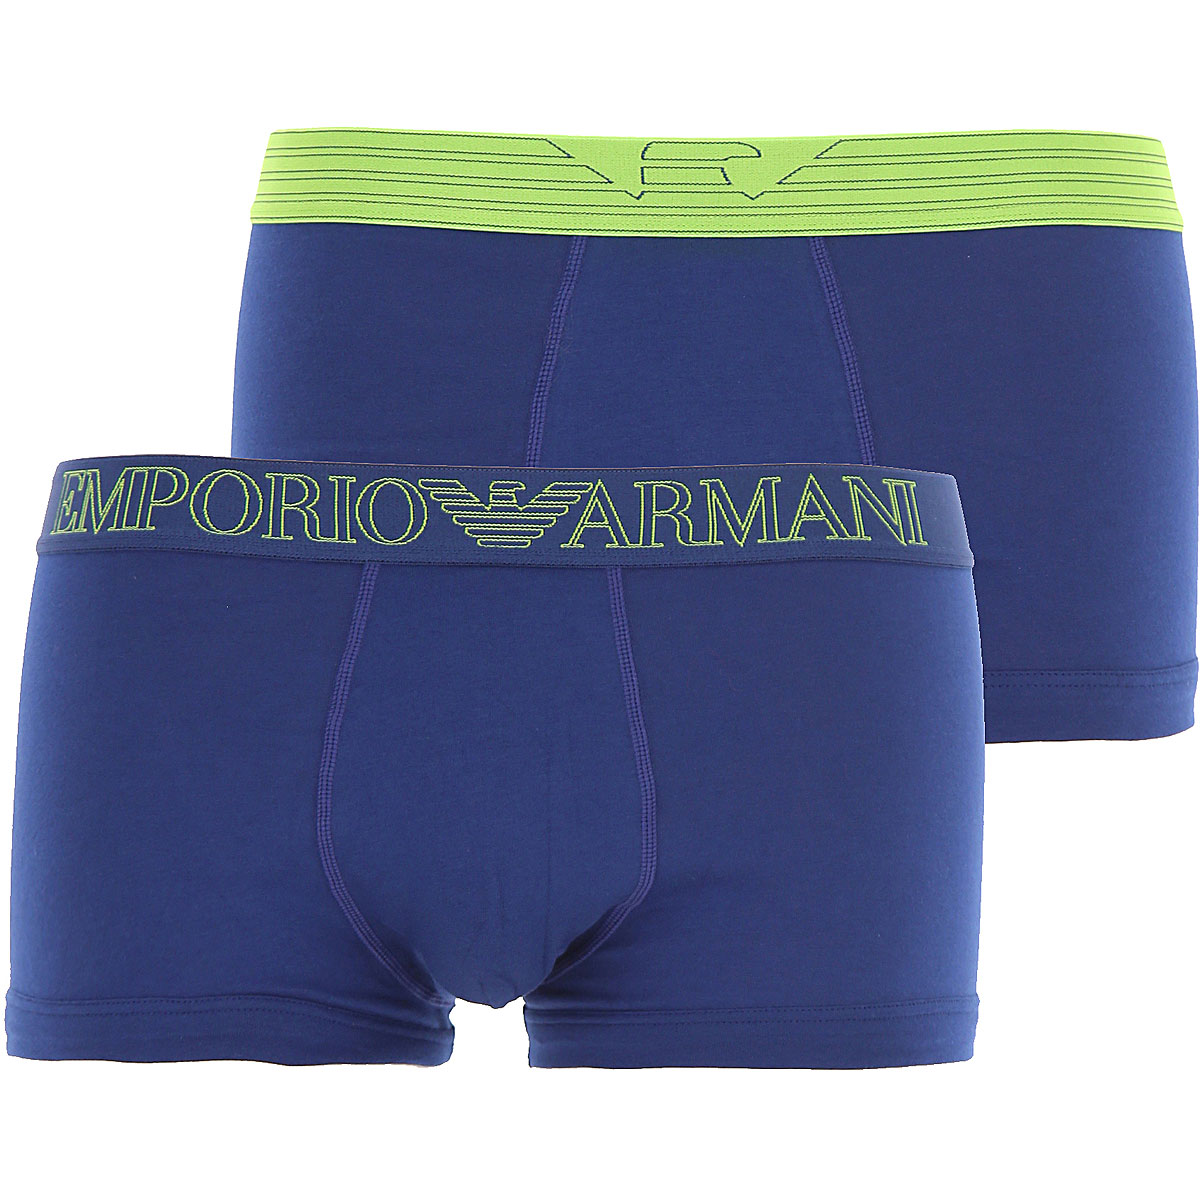 Emporio Armani Boxer Shorts für Herren, Unterhose, Short, Boxer Günstig im Outlet Sale, 2 Pack, Bluette, Baumwolle, 2017, L M S XL